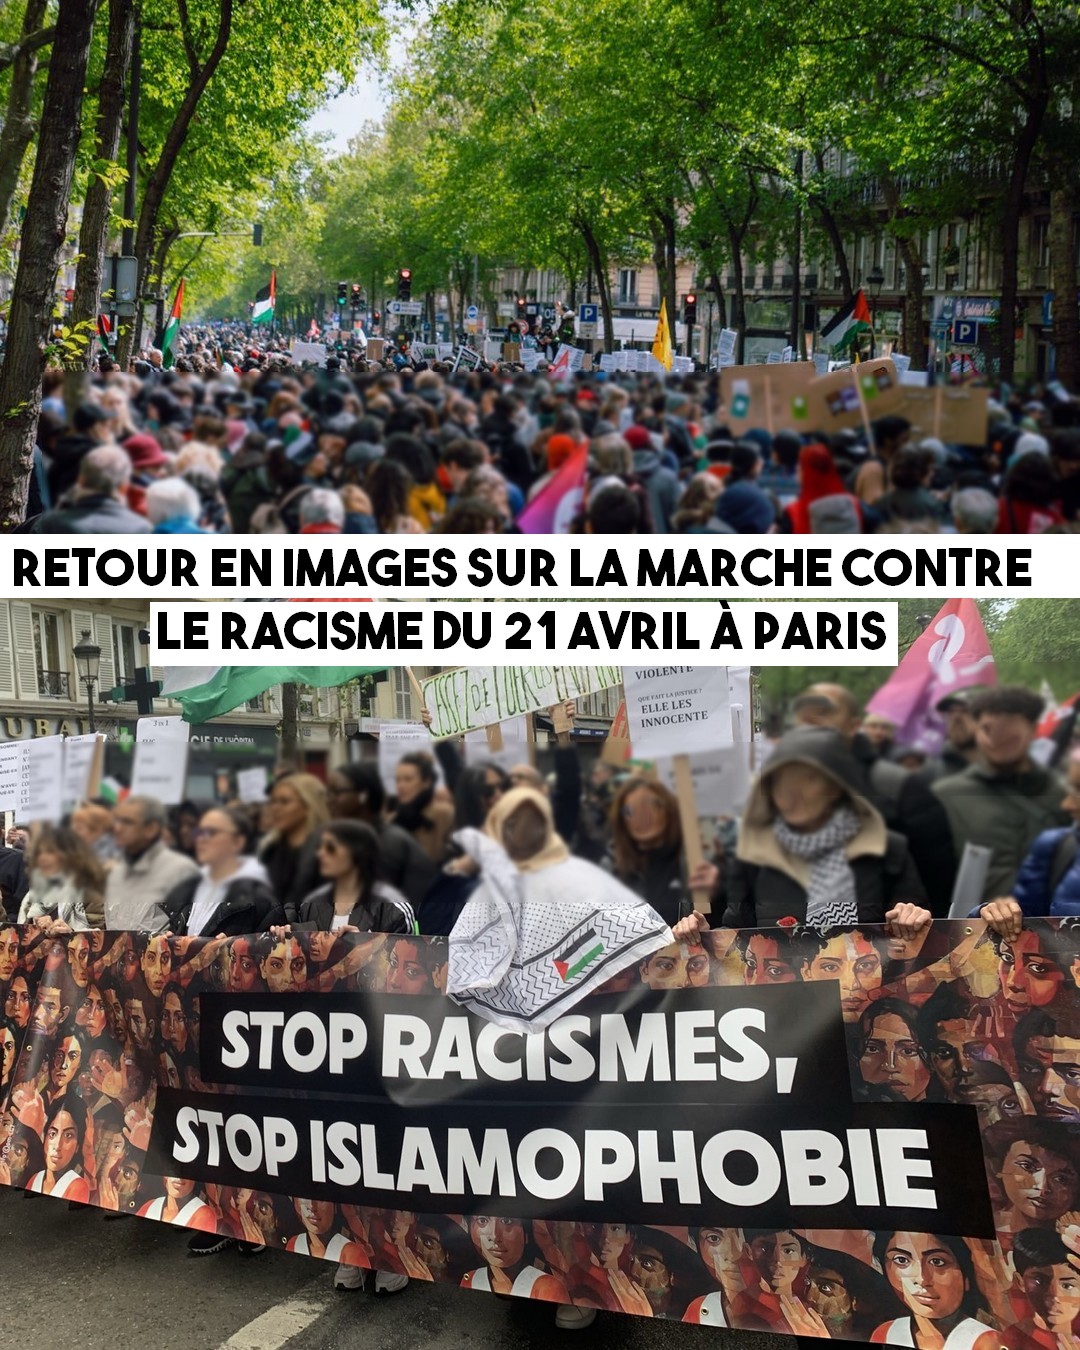 Marche contre le racisme a Paris : retour en images